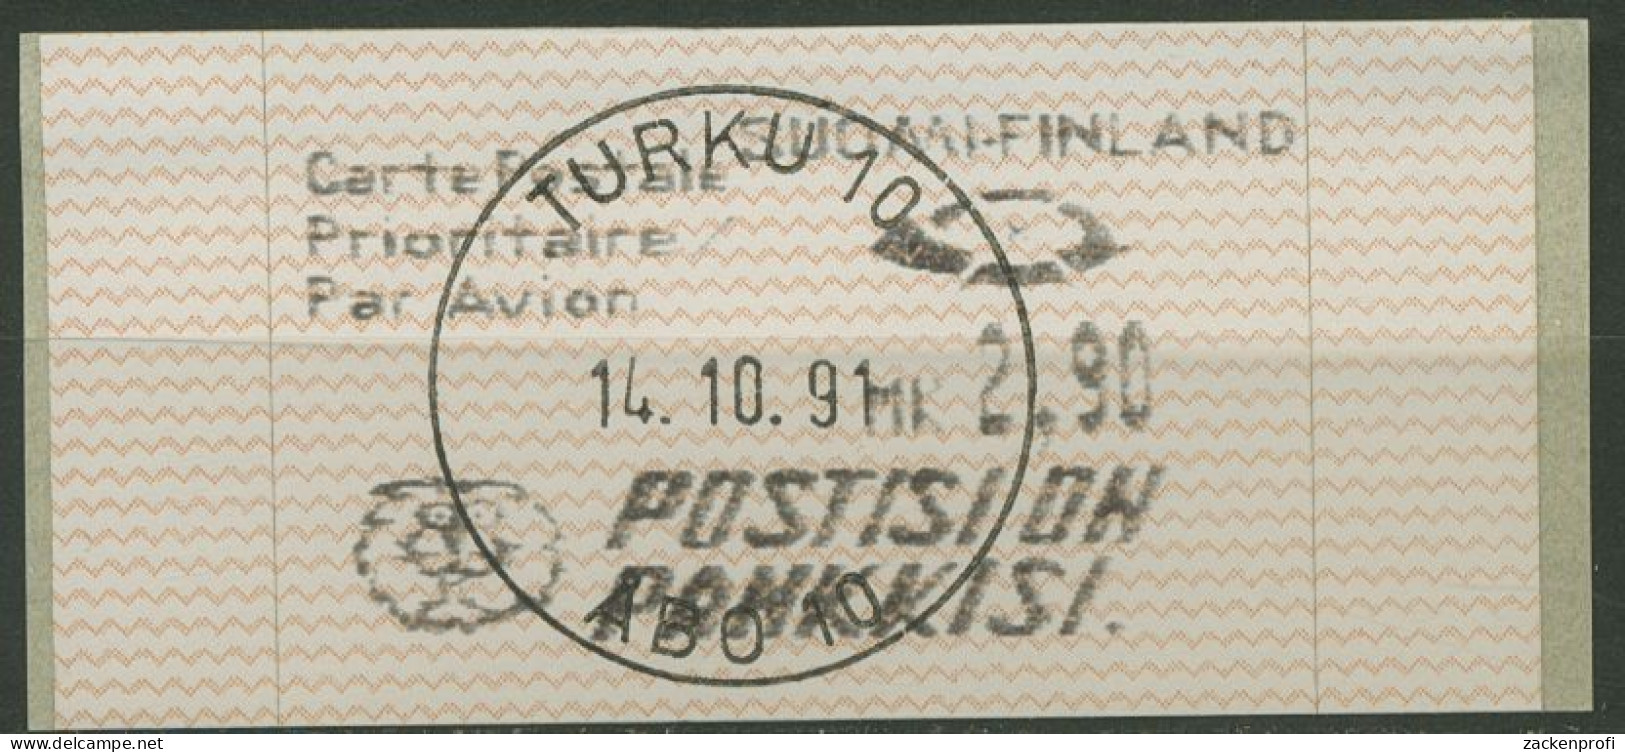 Finnland Automatenmarken 1991 2,90 MK Einzelwert, ATM 10.2 Z 3 Gestempelt - Machine Labels [ATM]